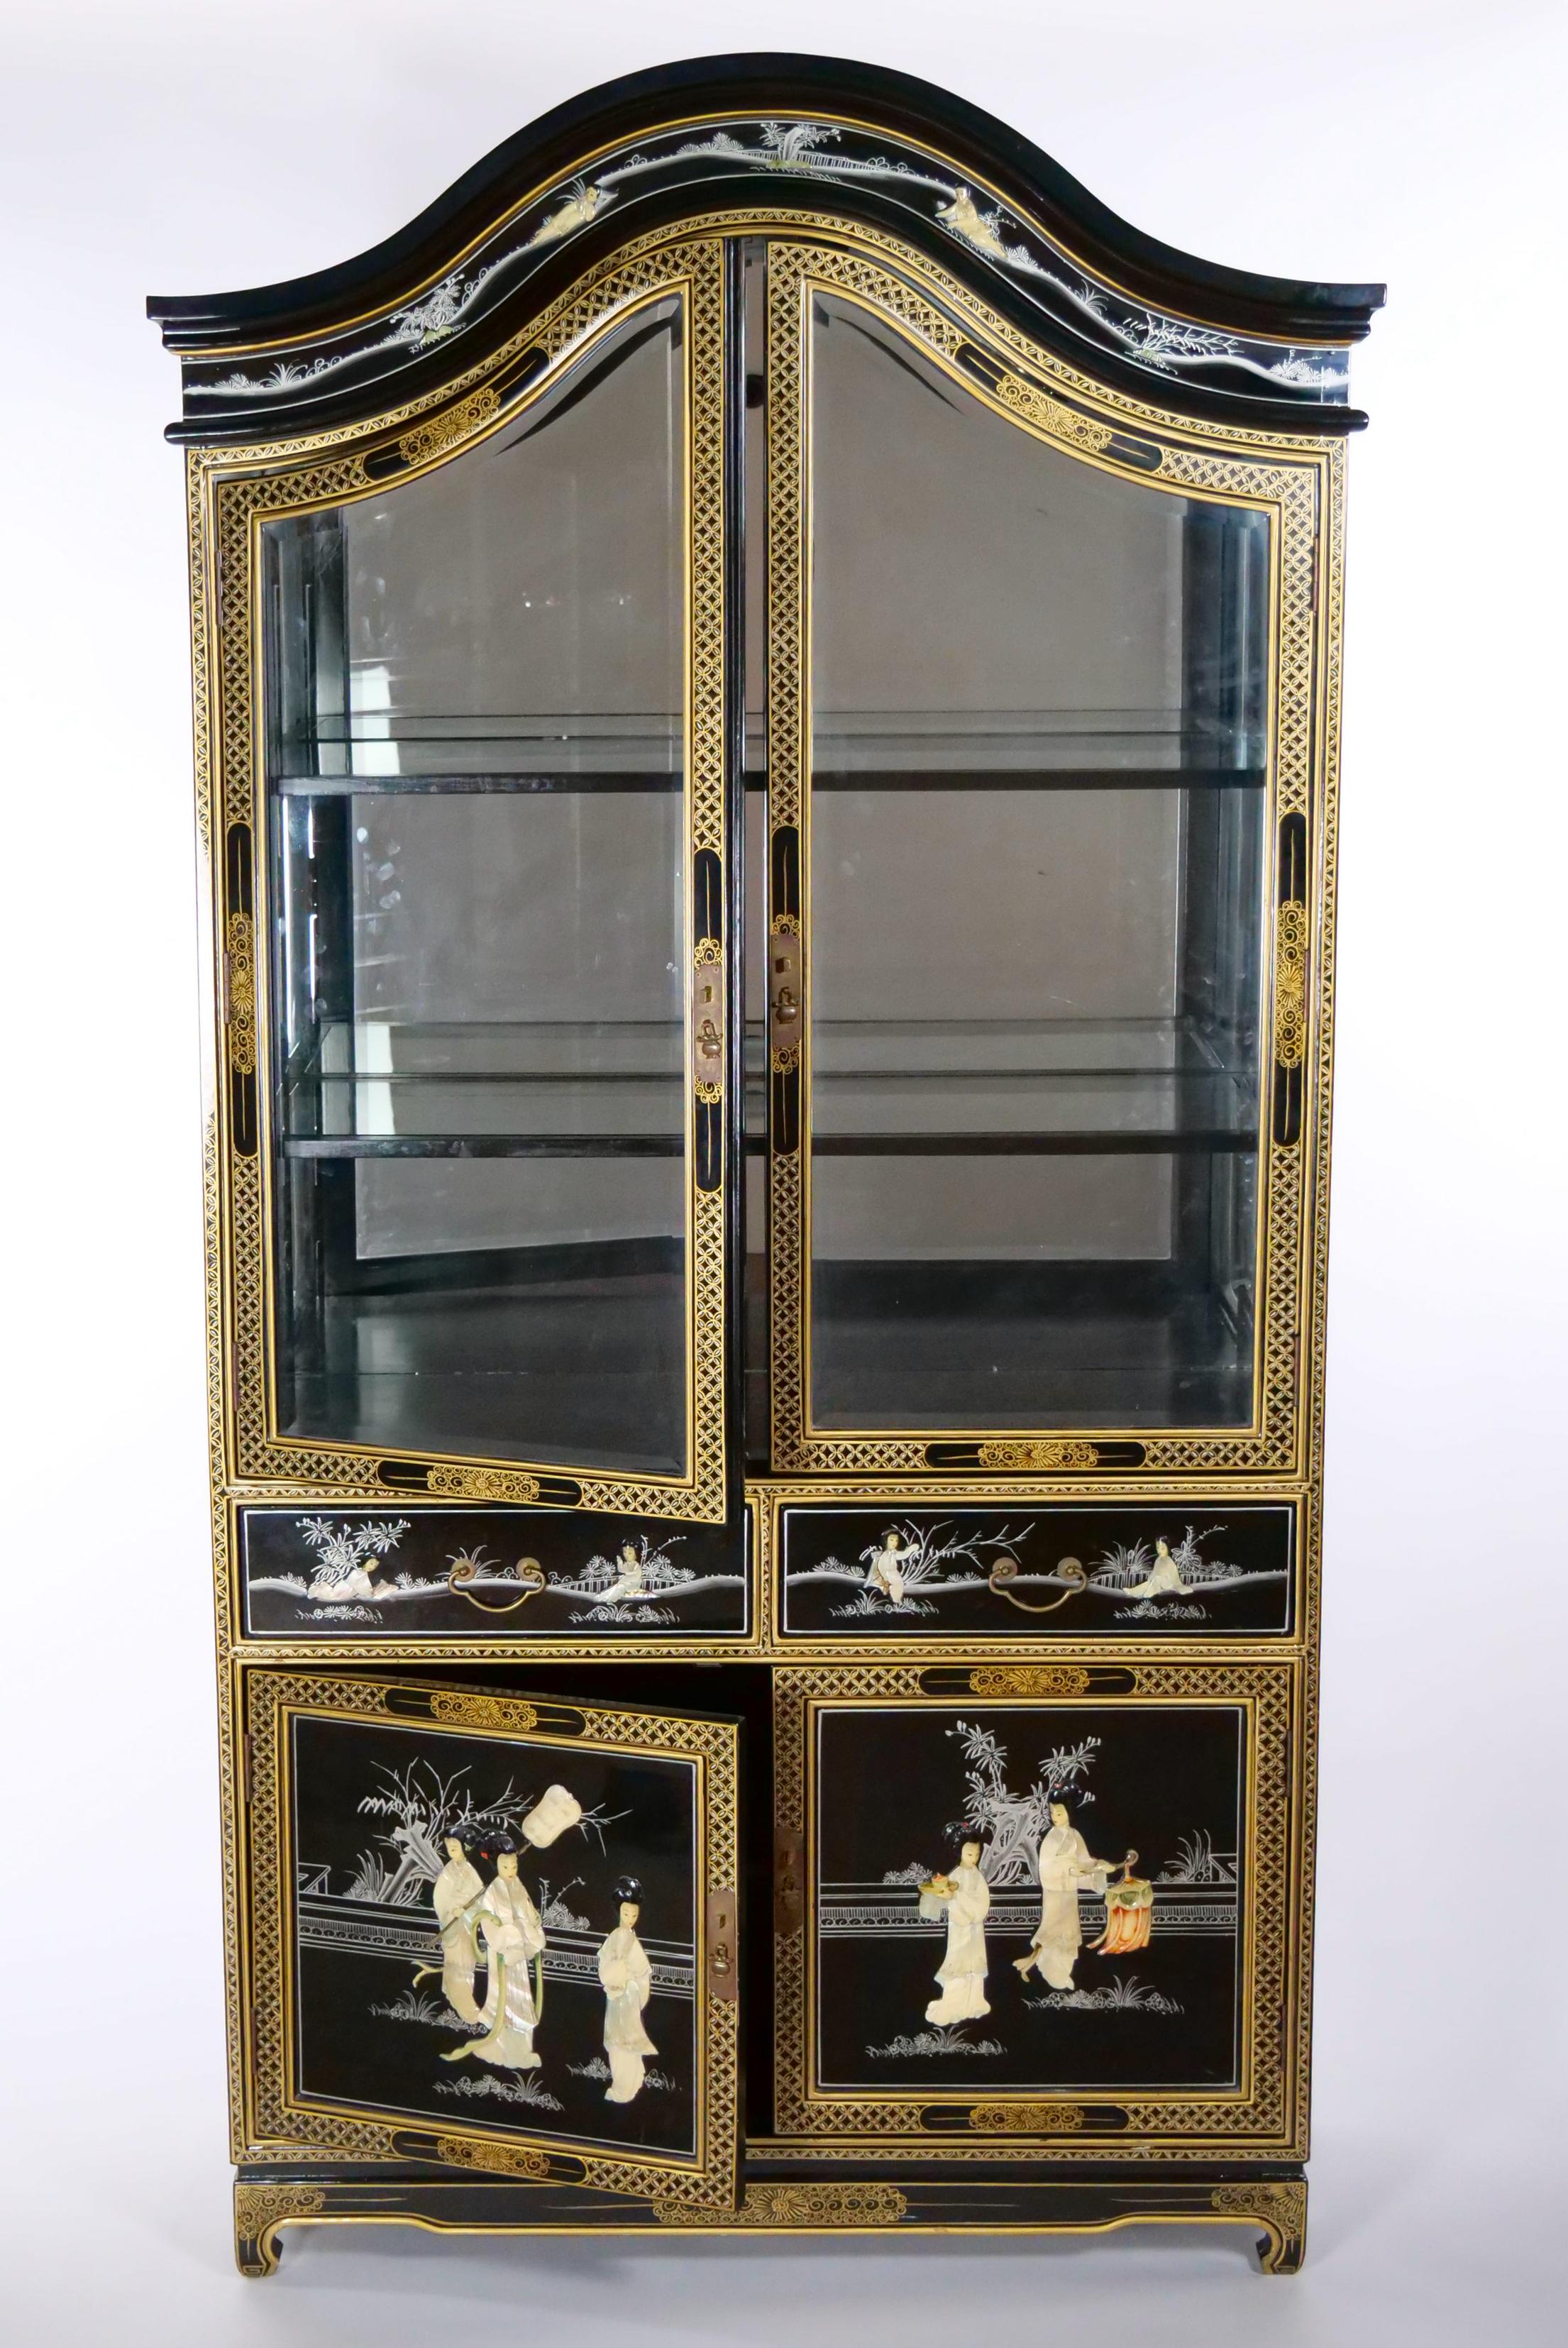 Schön handbemalt und dekoriert schwarz lackiert vergoldet Holz Chinoiserie Szene Detail Display Porzellanschrank. Der Schrank / die Vitrine verfügt über eine doppelte obere Fronttür mit zwei angebrachten holzgerahmten  Glaseinlegeböden, die auf zwei